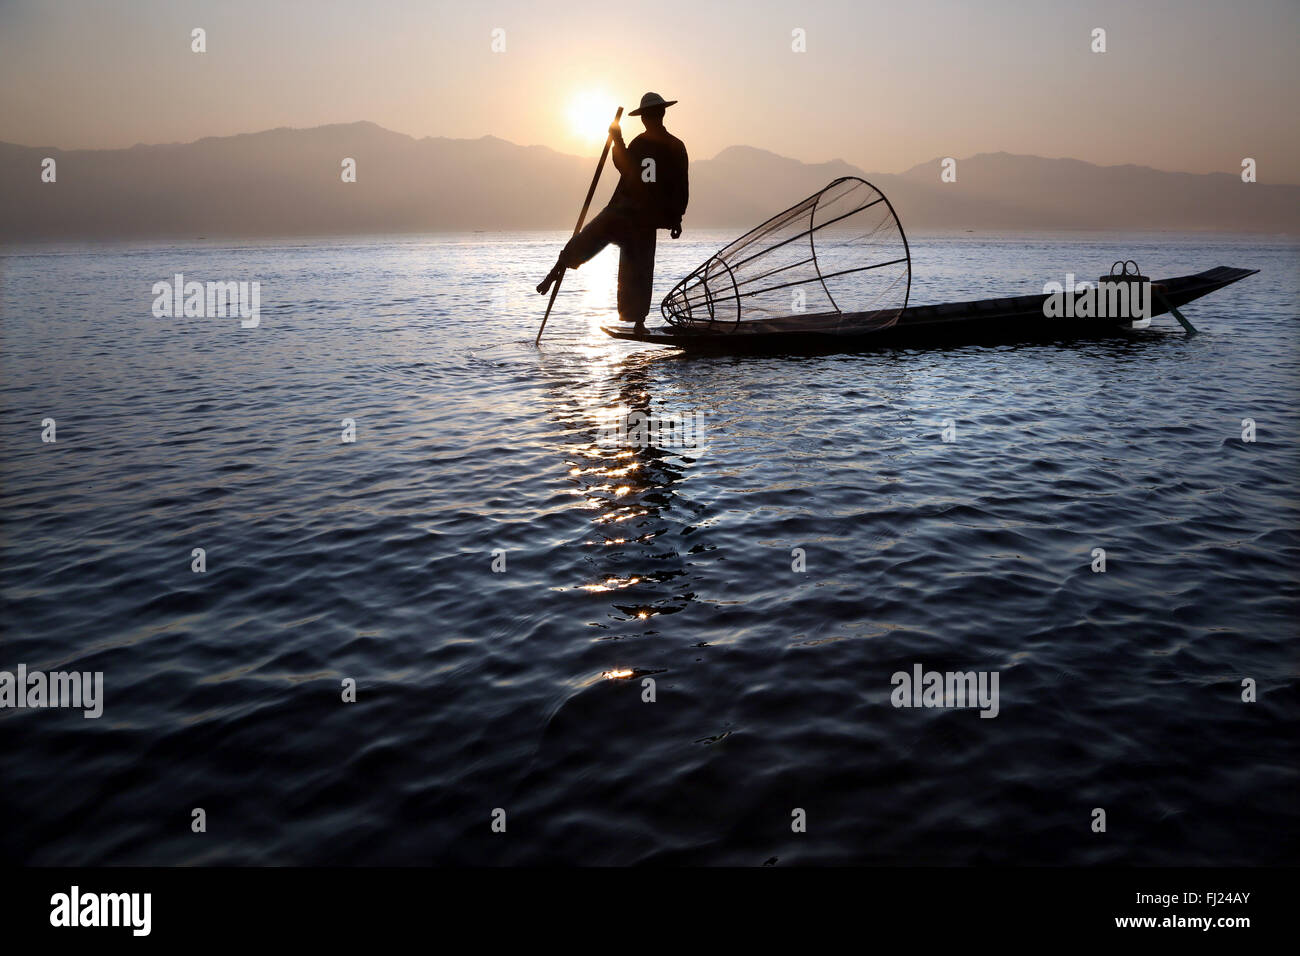 Paisaje de pescador tradicional birmana en el lago Inle por sunrise, Myanmar Foto de stock